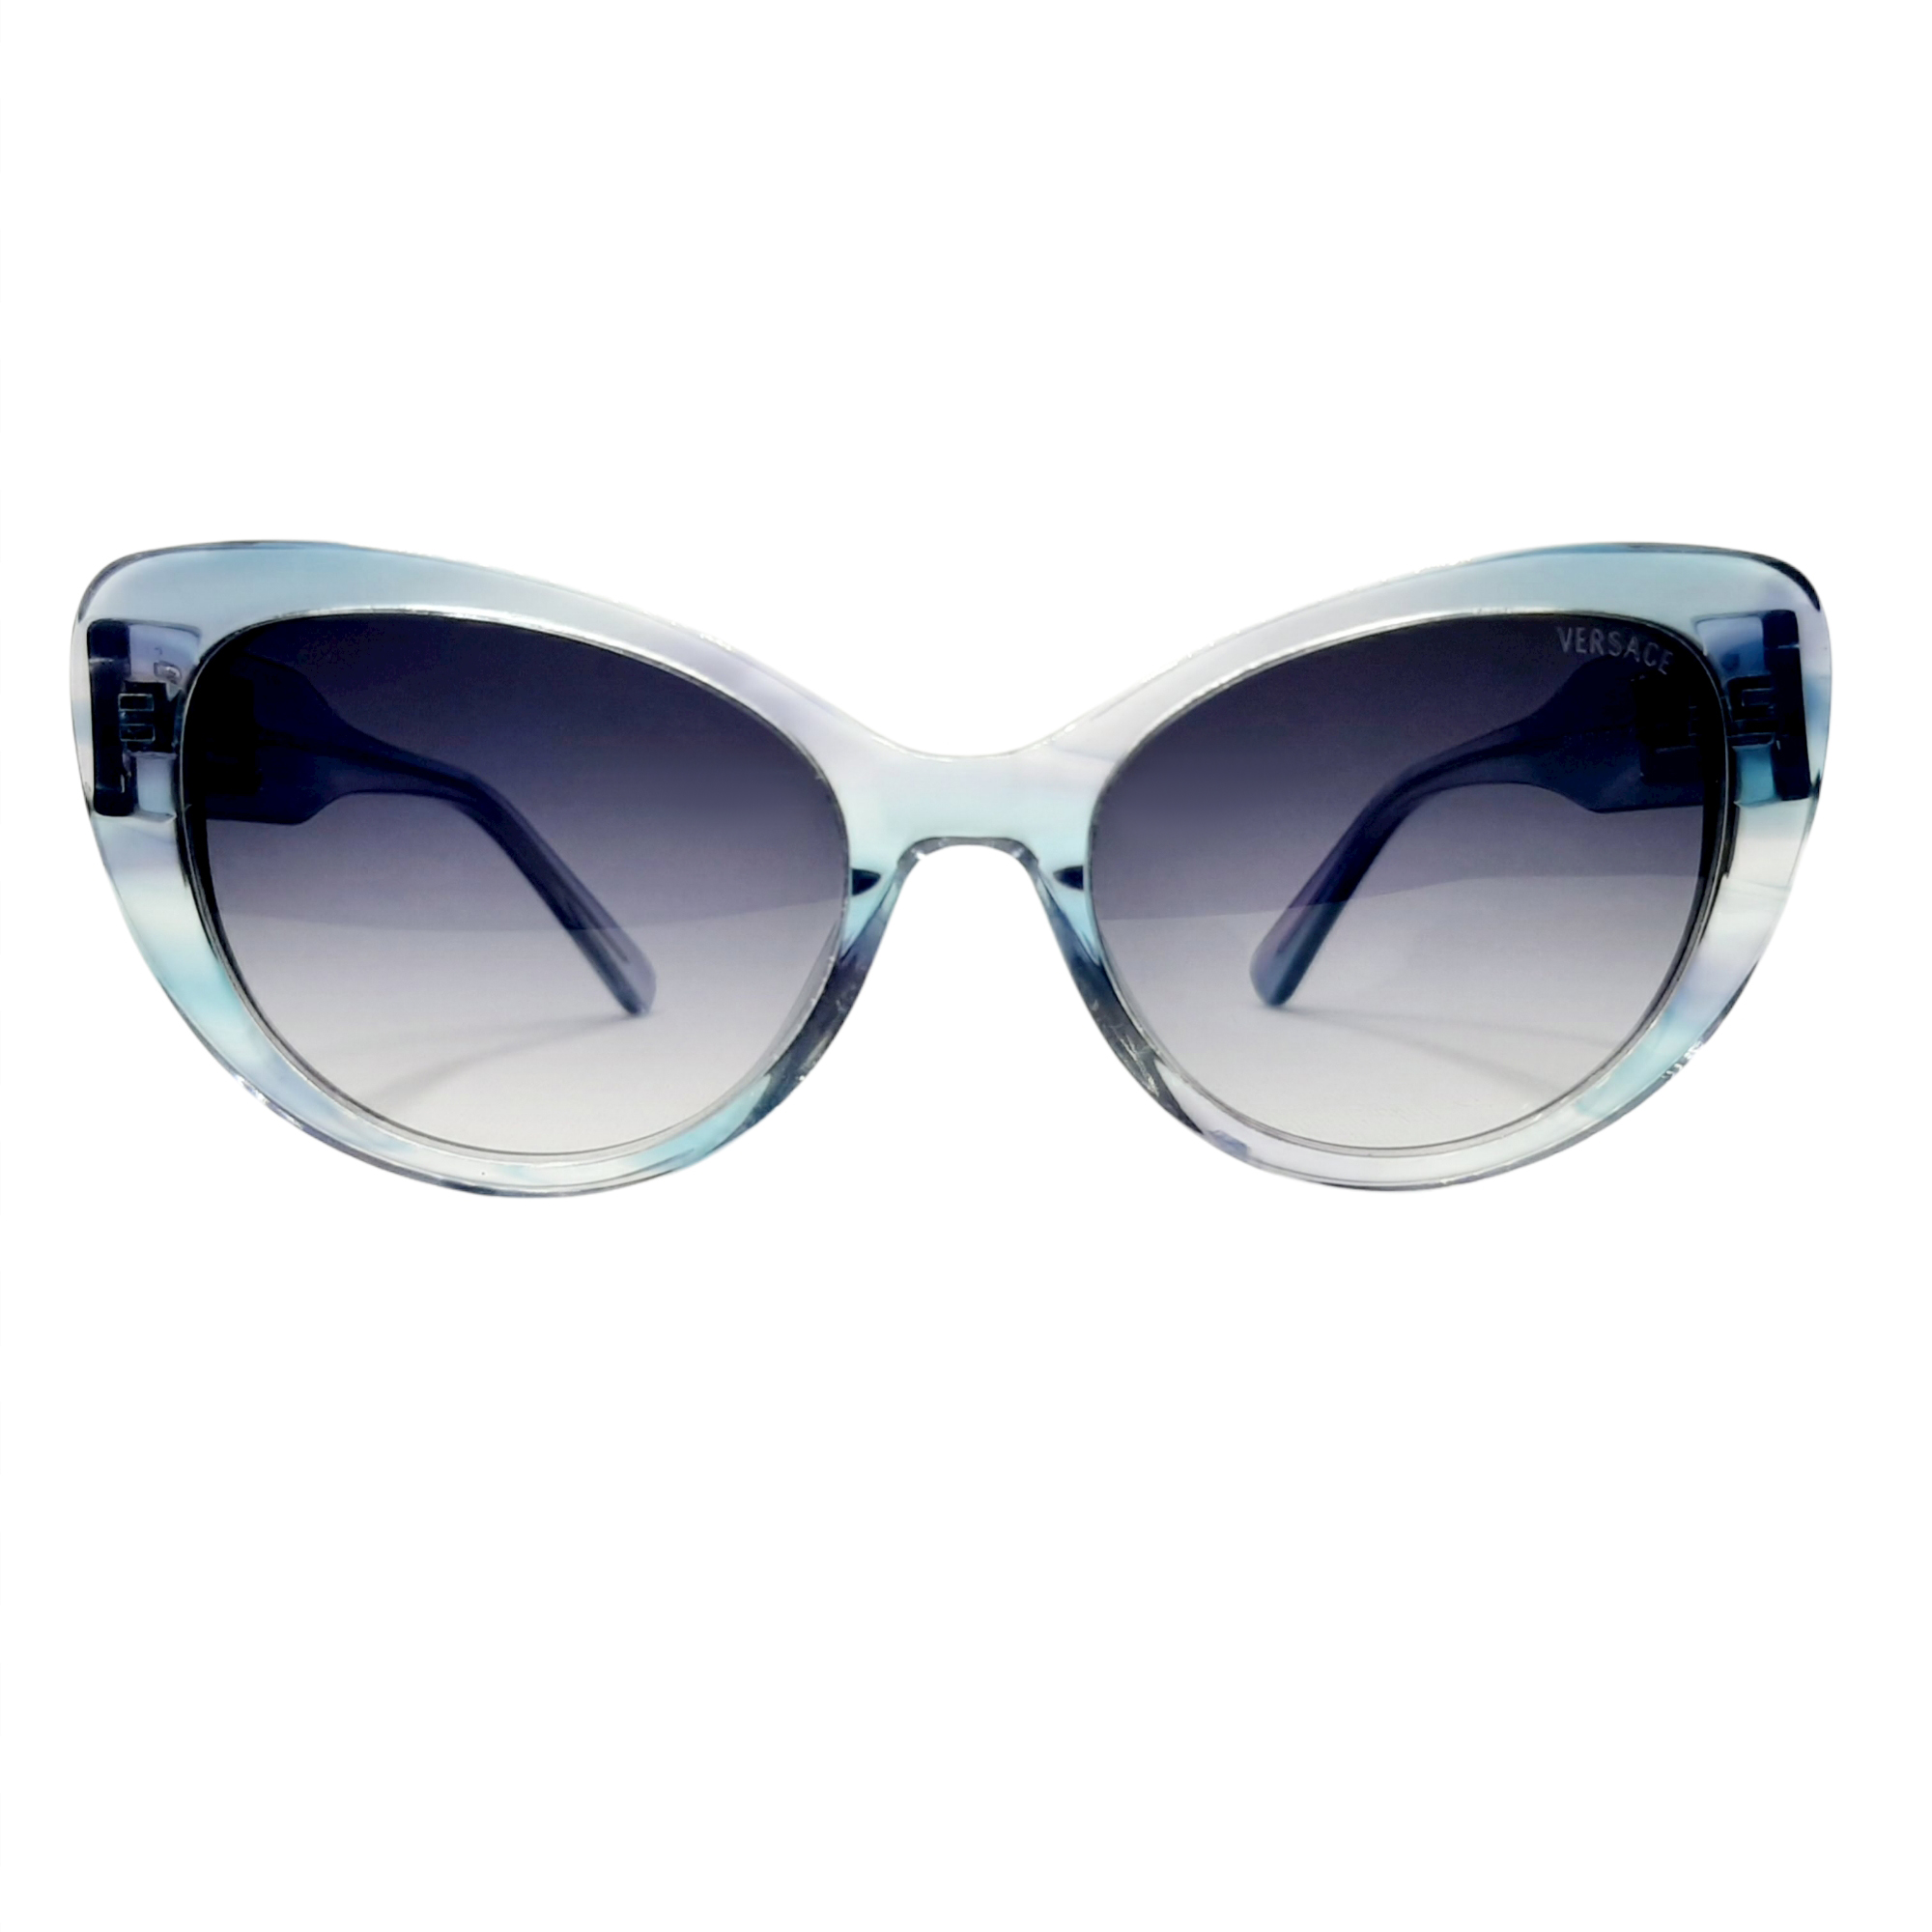 عینک آفتابی زنانه ورساچه مدل VE4378c7